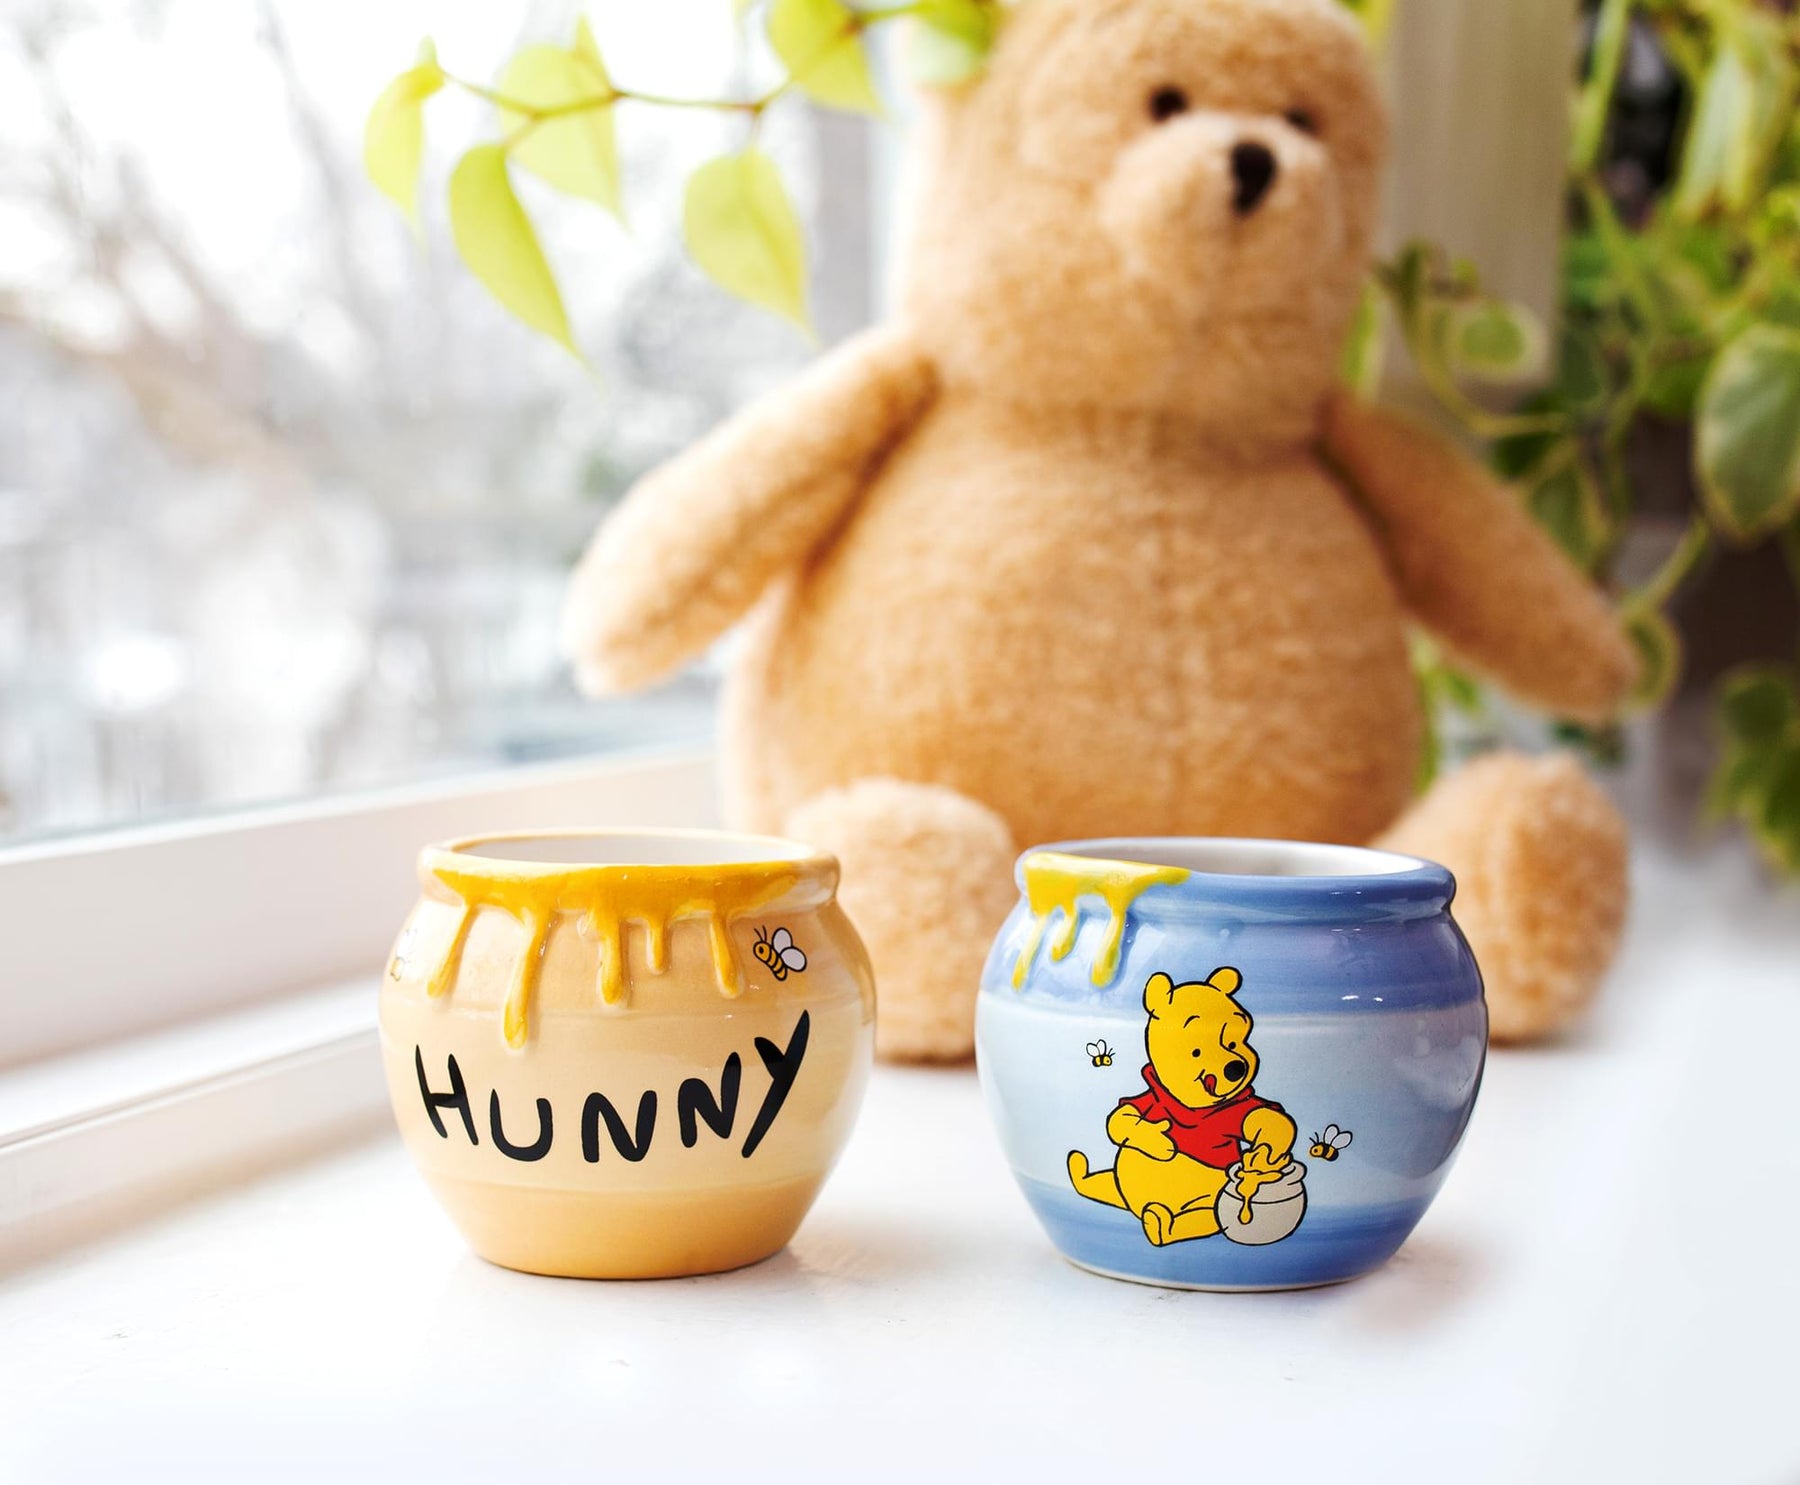 Winnie the Pooh Hunny Pot Ceramic 3oz Mini Cups